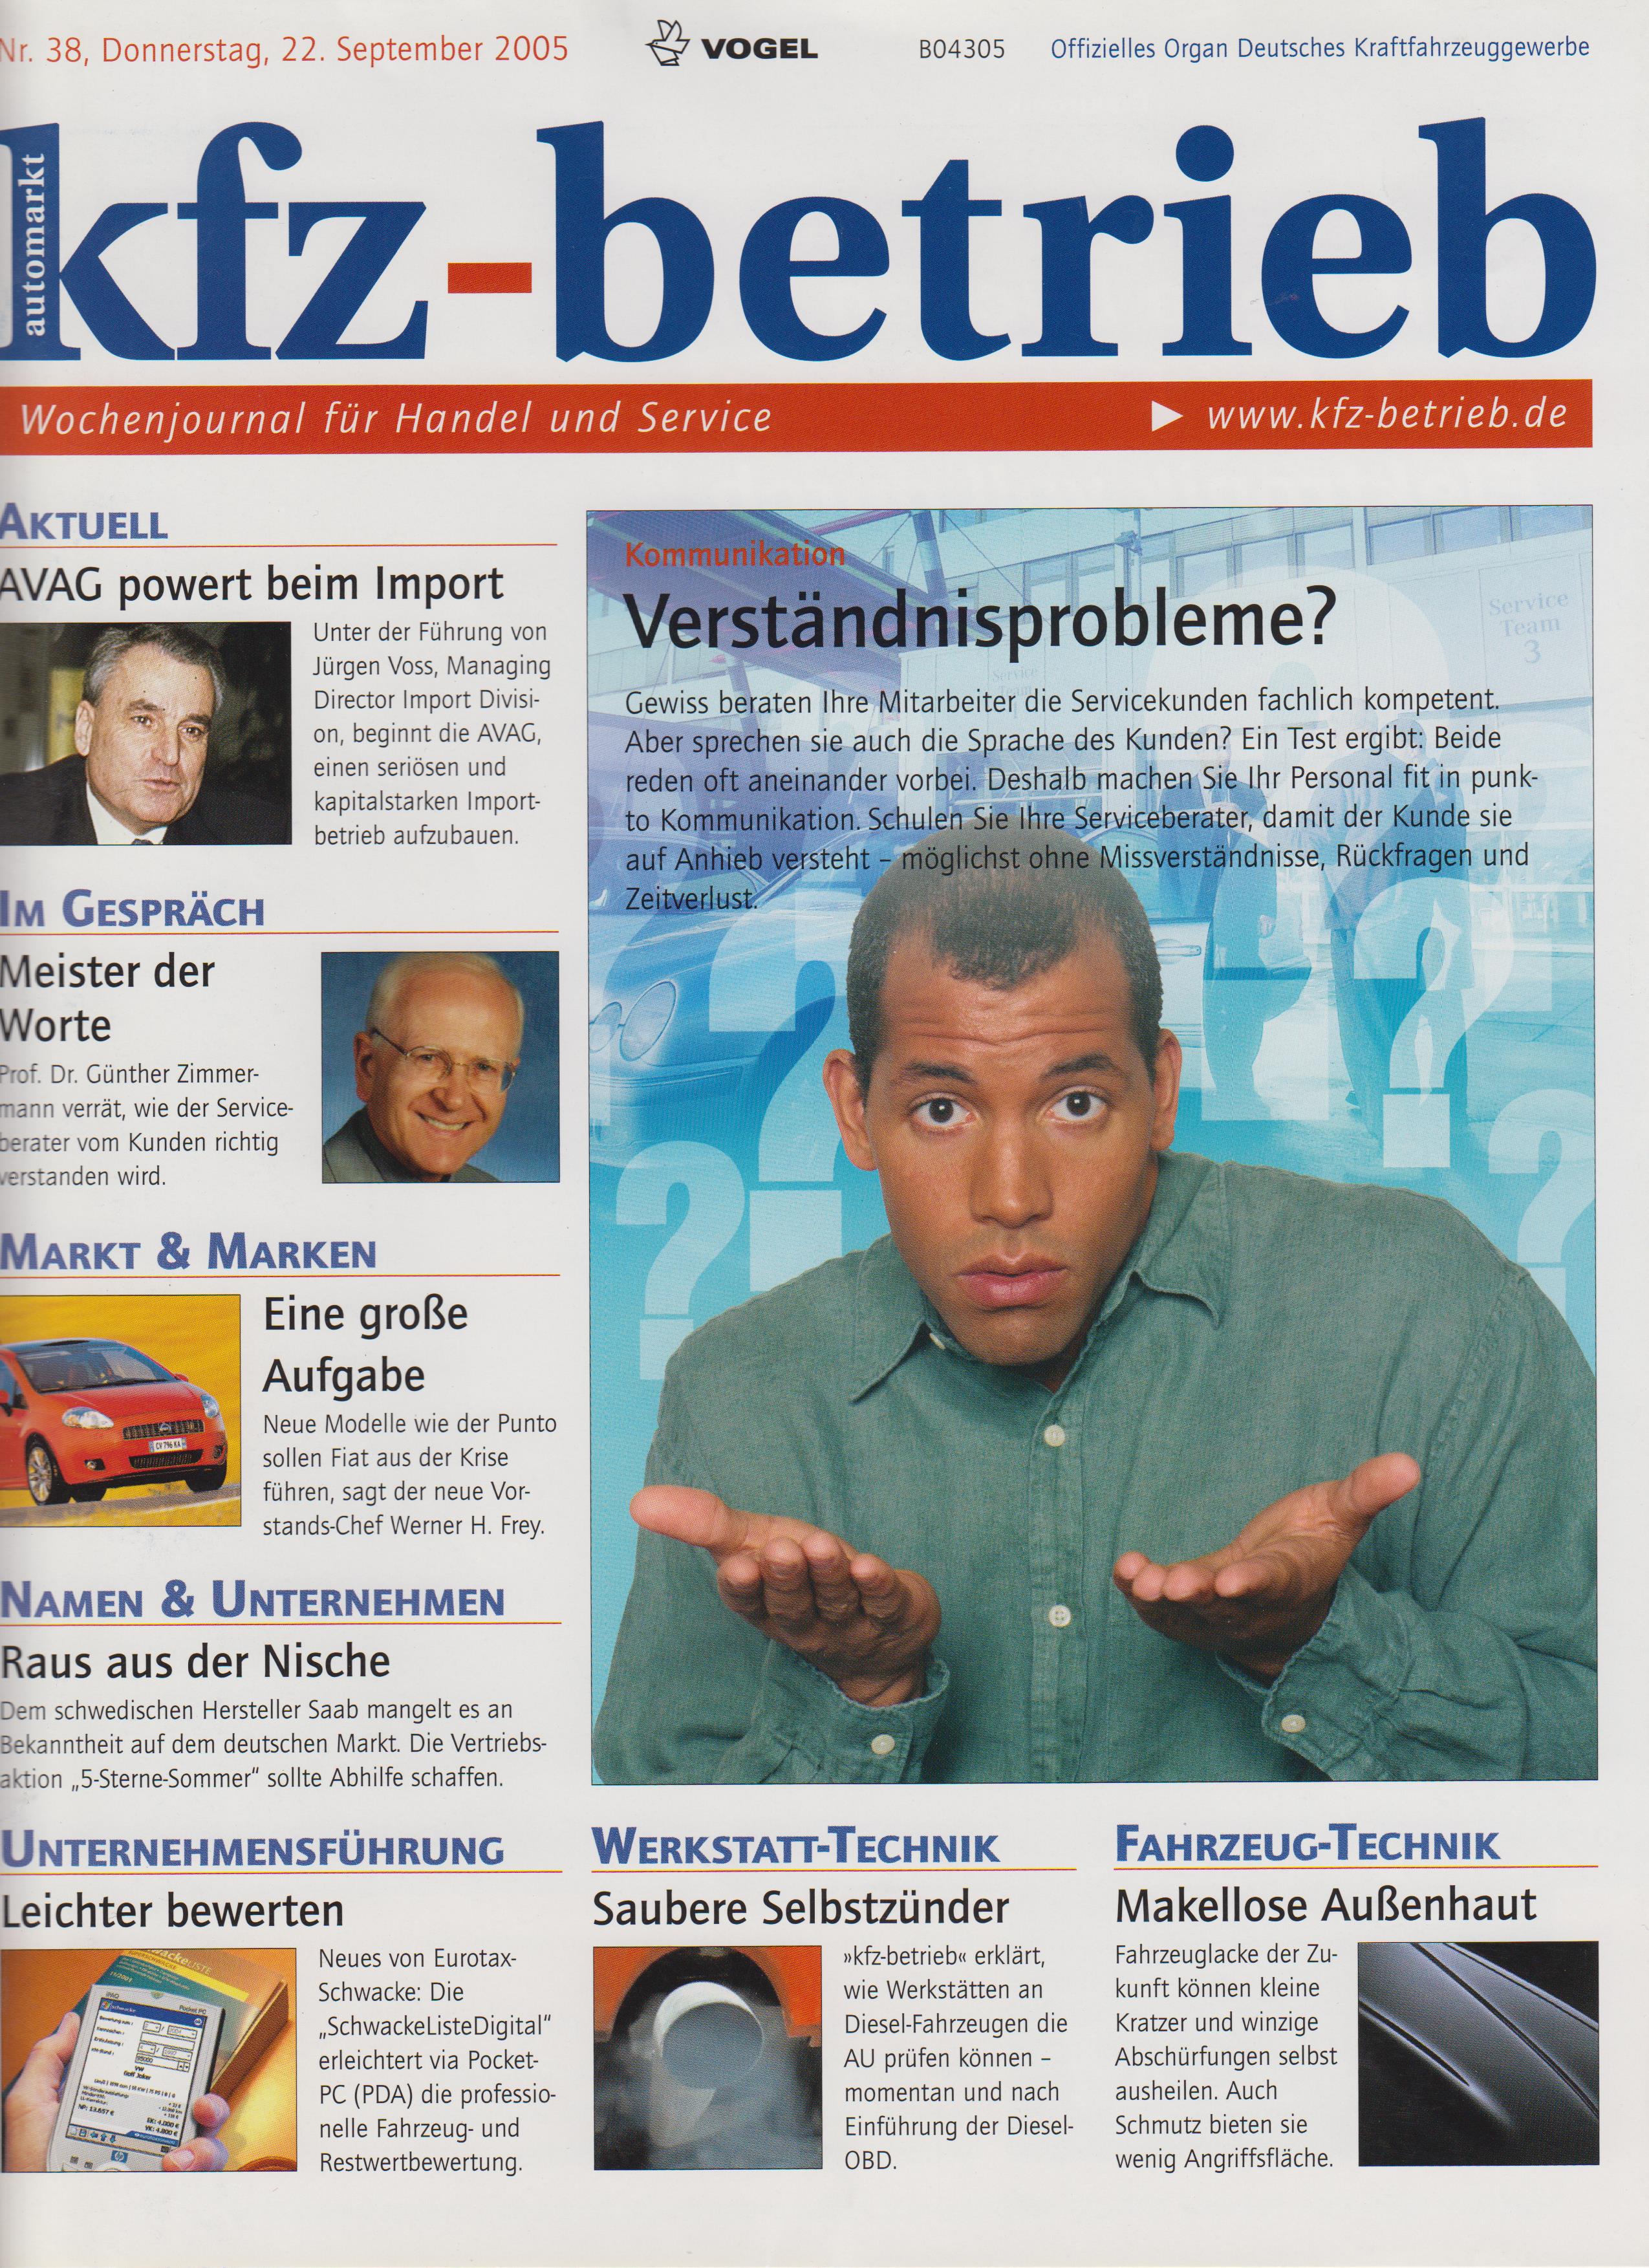 Trade journal KFZ Betriebs 09 2005